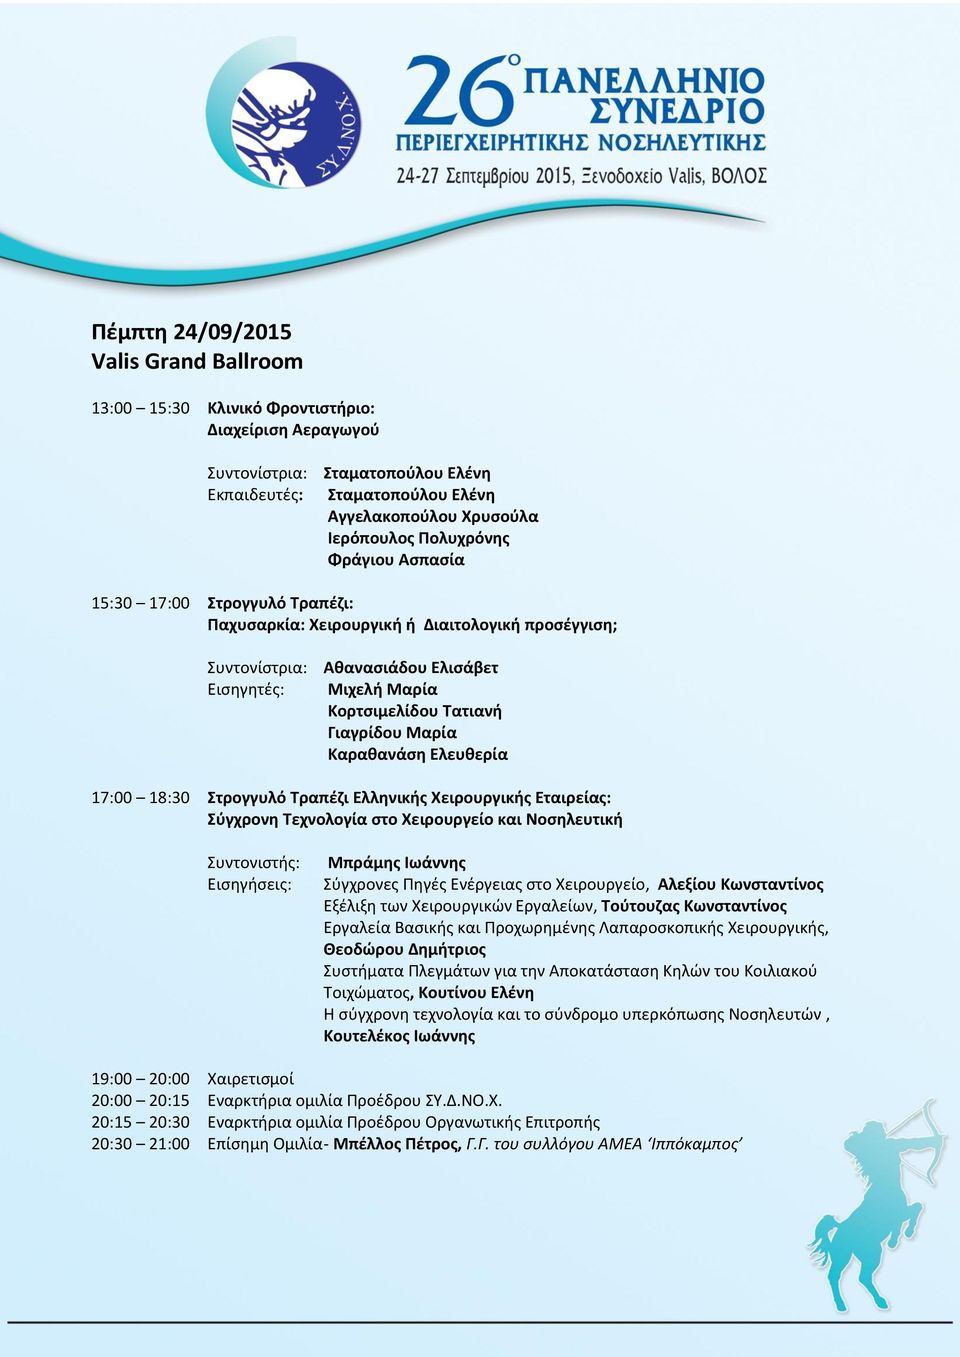 Μαρία Καραθανάση Ελευθερία 17:00 18:30 Στρογγυλό Τραπέζι Ελληνικής Χειρουργικής Εταιρείας: Σύγχρονη Τεχνολογία στο Χειρουργείο και Νοσηλευτική Συντονιστής: Εισηγήσεις: Μπράμης Ιωάννης Σύγχρονες Πηγές